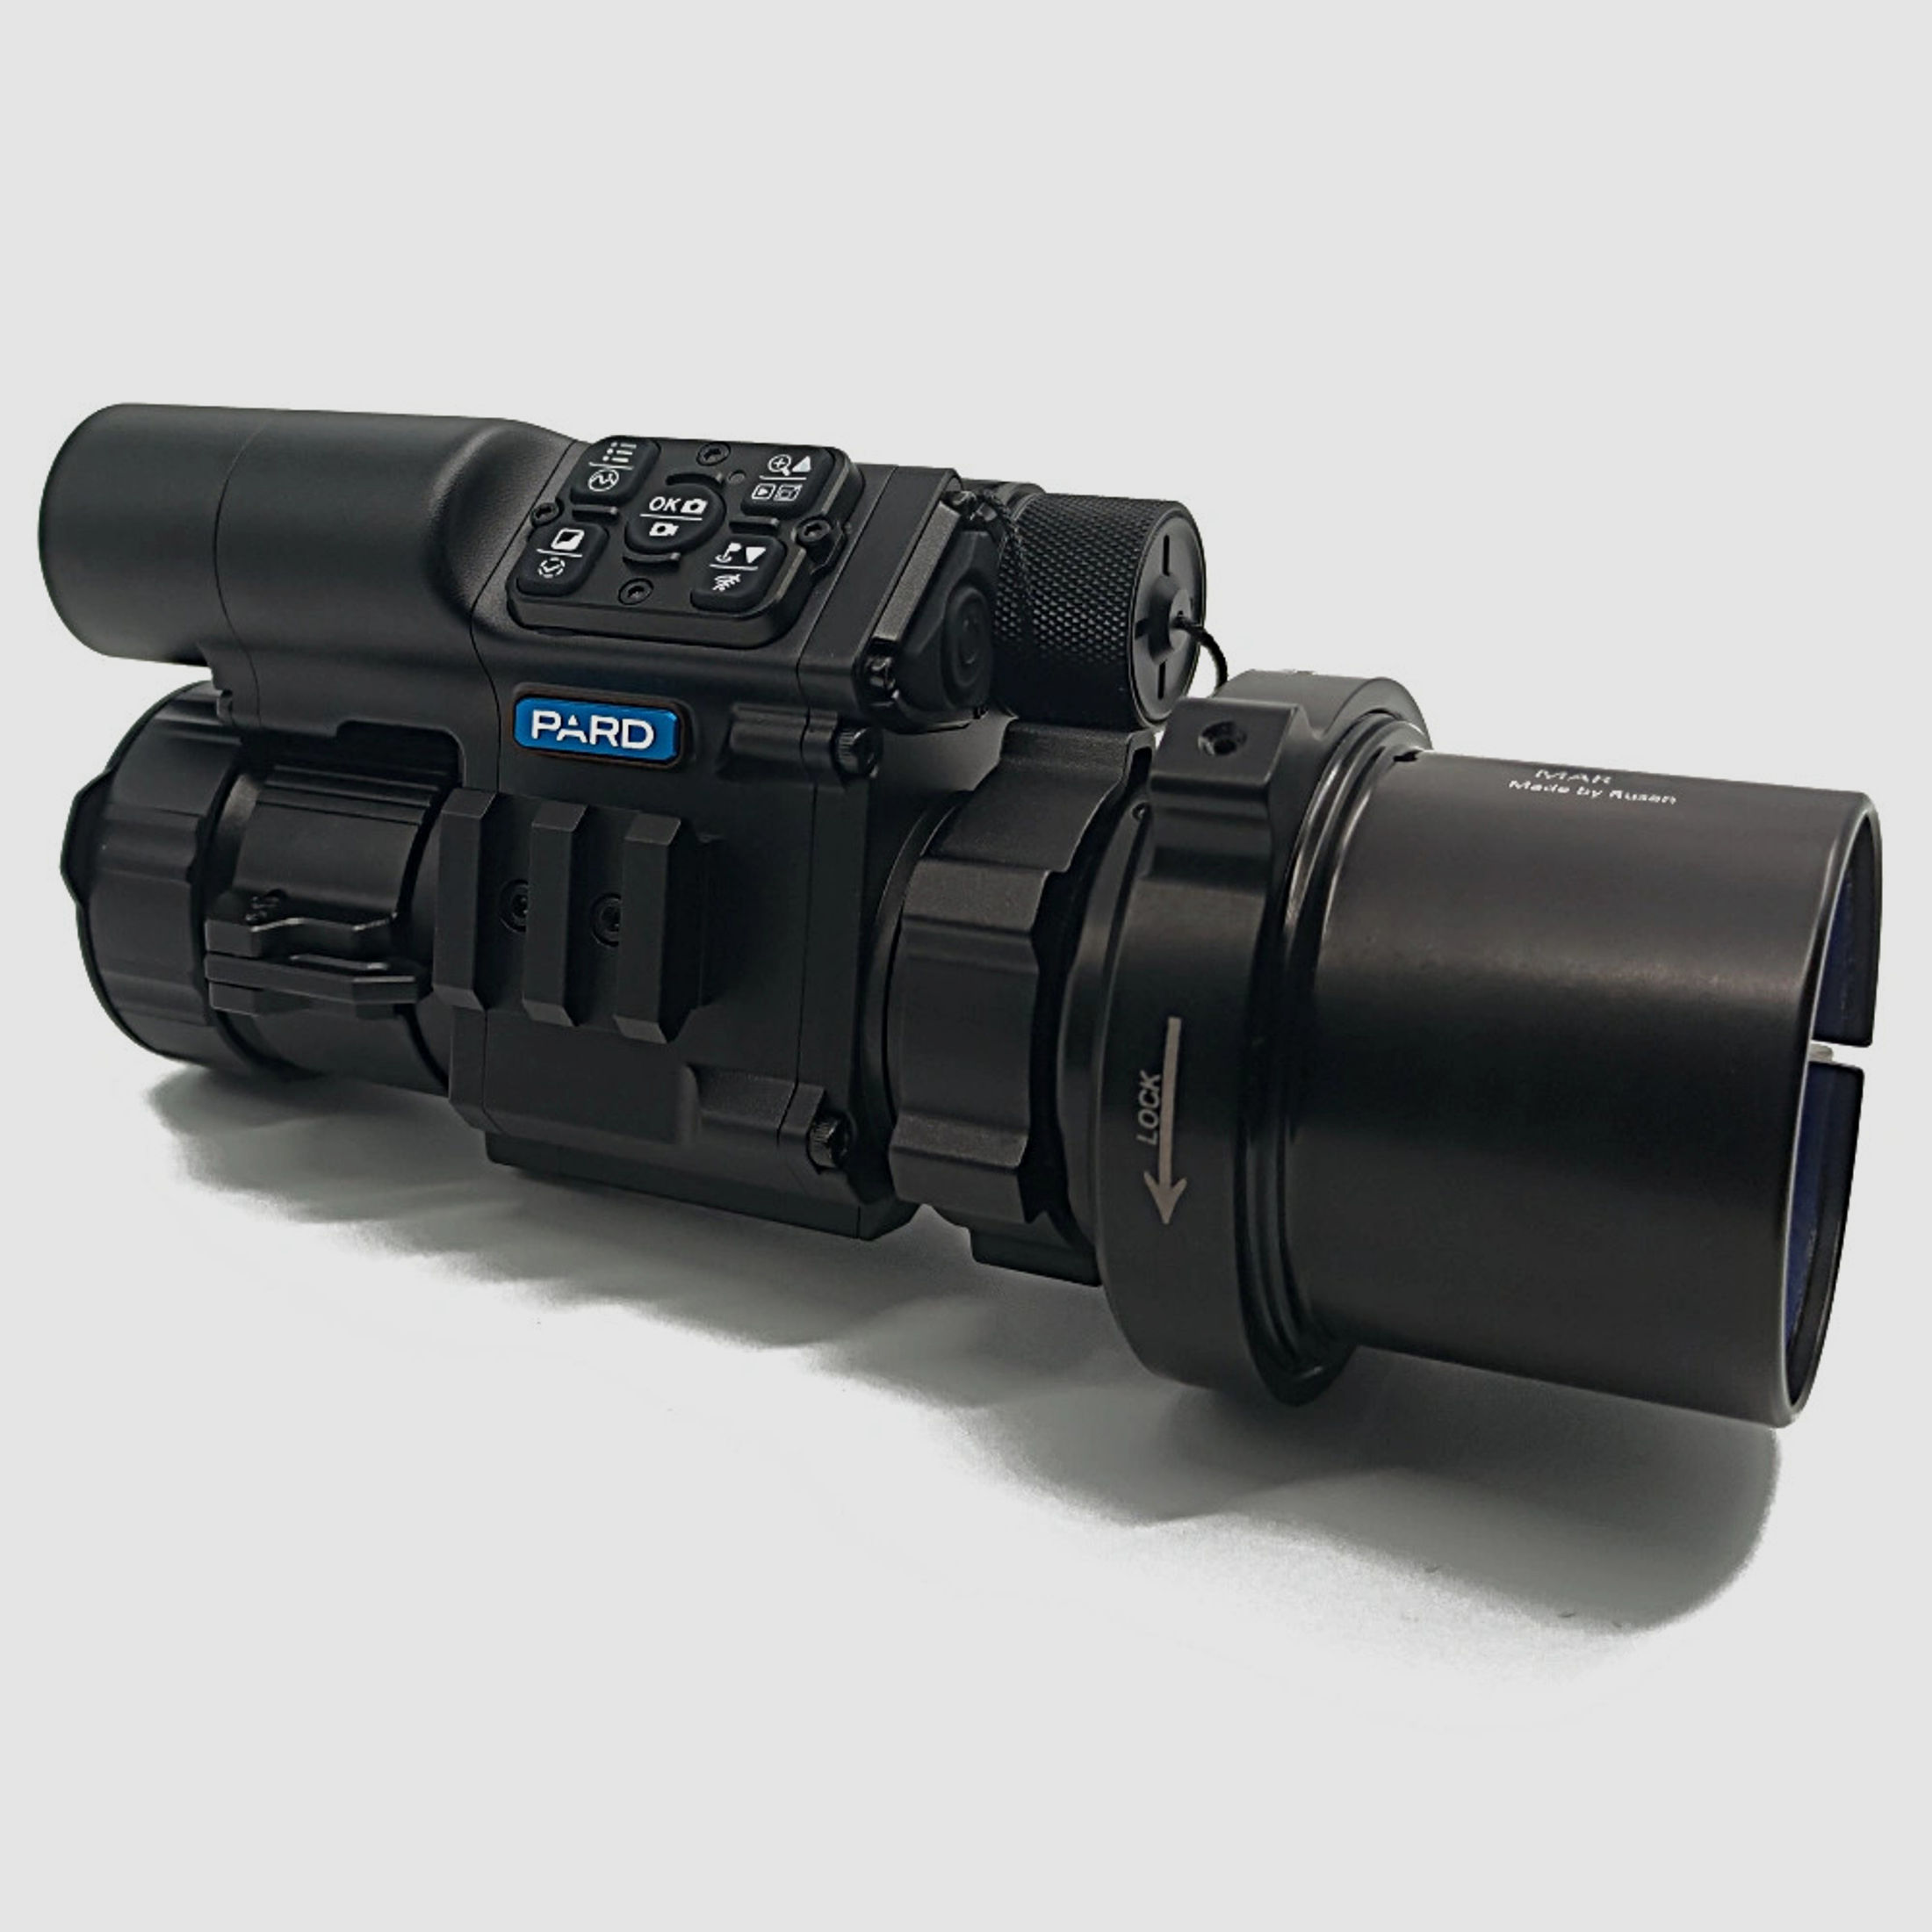 PARD FD1 Nachtsicht 3 in 1 Vorsatz, Monokular & Zielfernrohr - 850 nm mit LRF 67 mm RUSAN MAR + RUSAN MCR